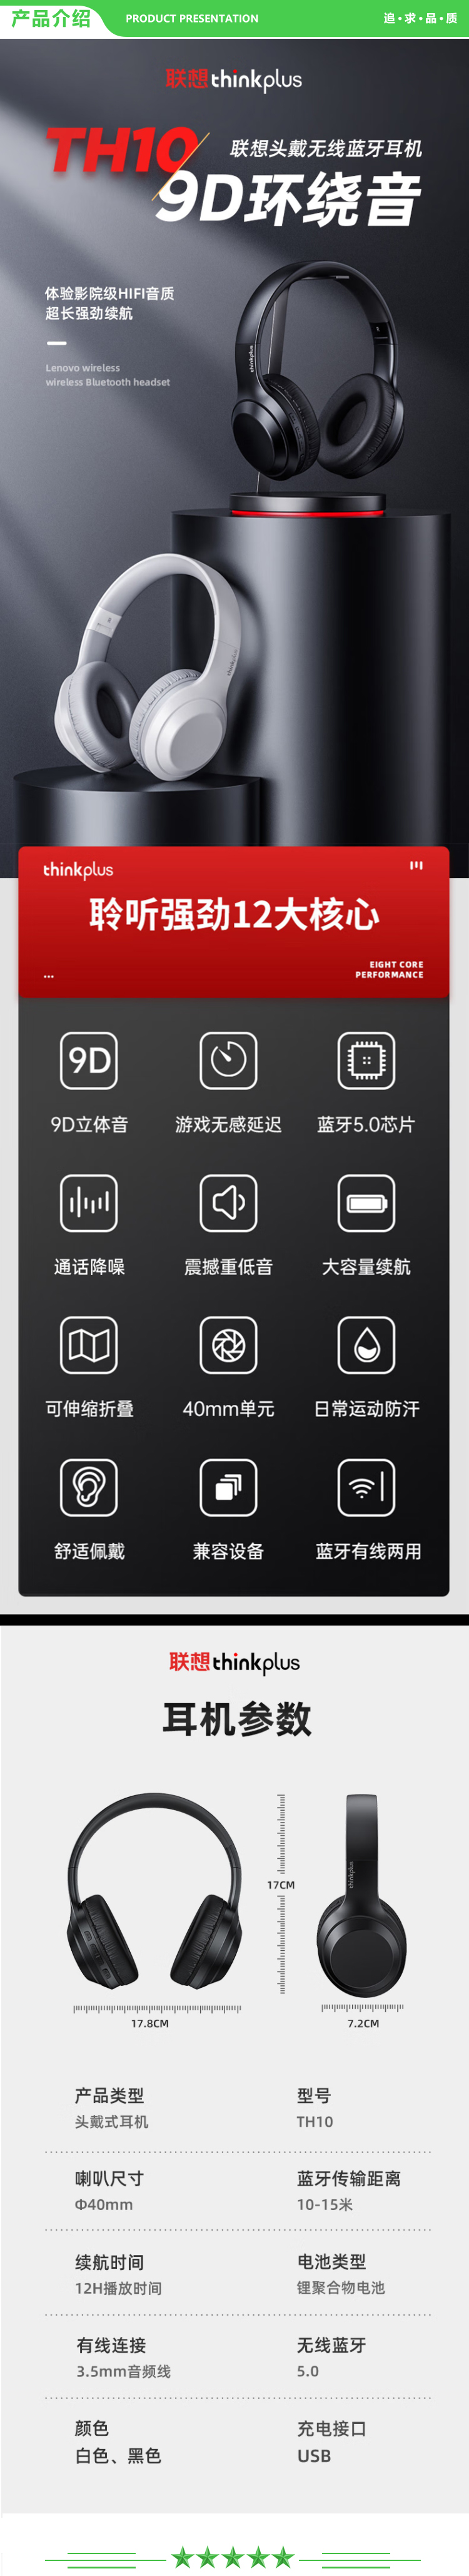 联想 Lenovo thinkplus th10 黑色 头戴式无线蓝牙耳机电竞游戏重低音音乐运动降噪耳机通用苹果华为小米手机 .jpg